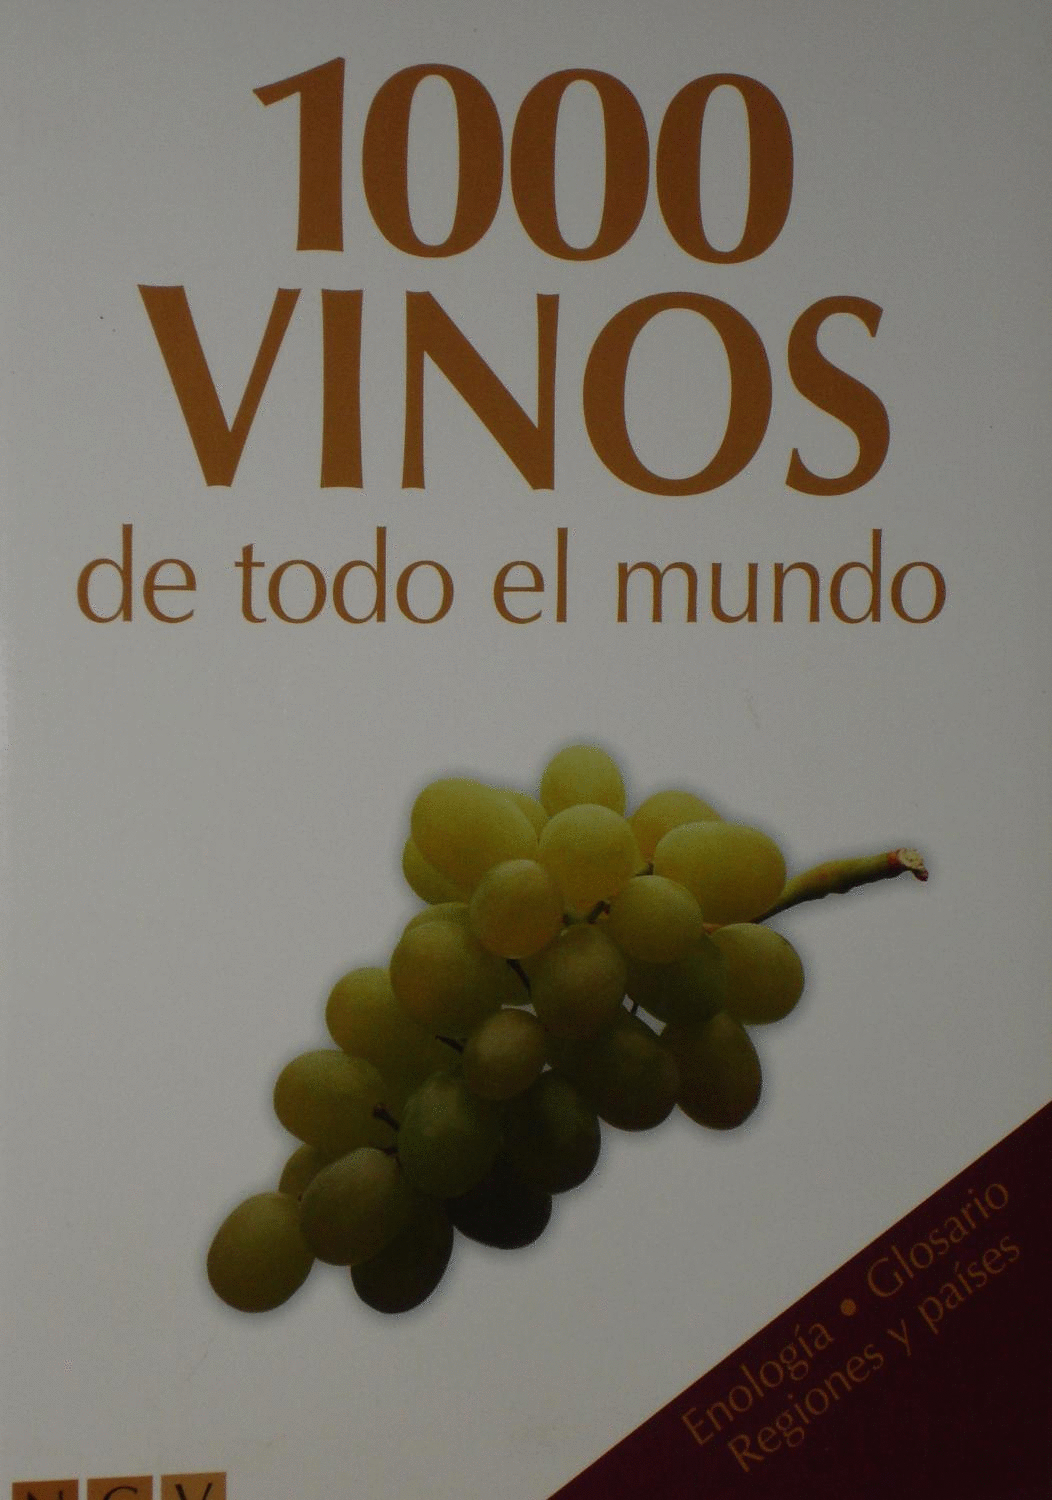 1000 VINOS DE TODO EL MUNDO